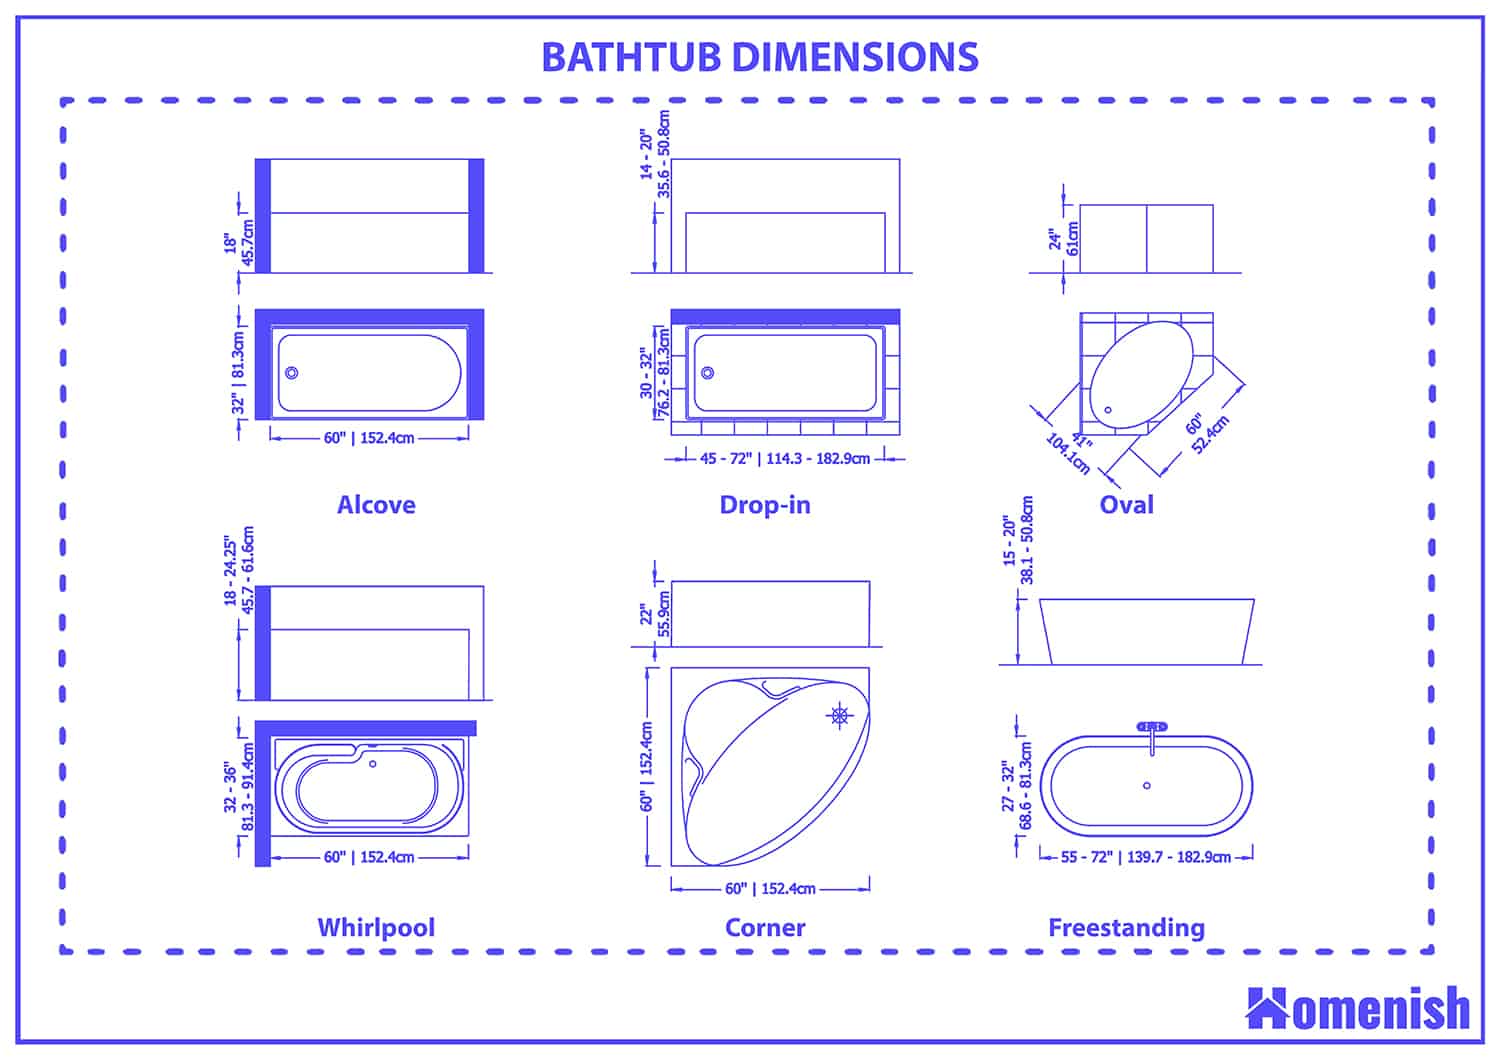 Bathtub dimensions